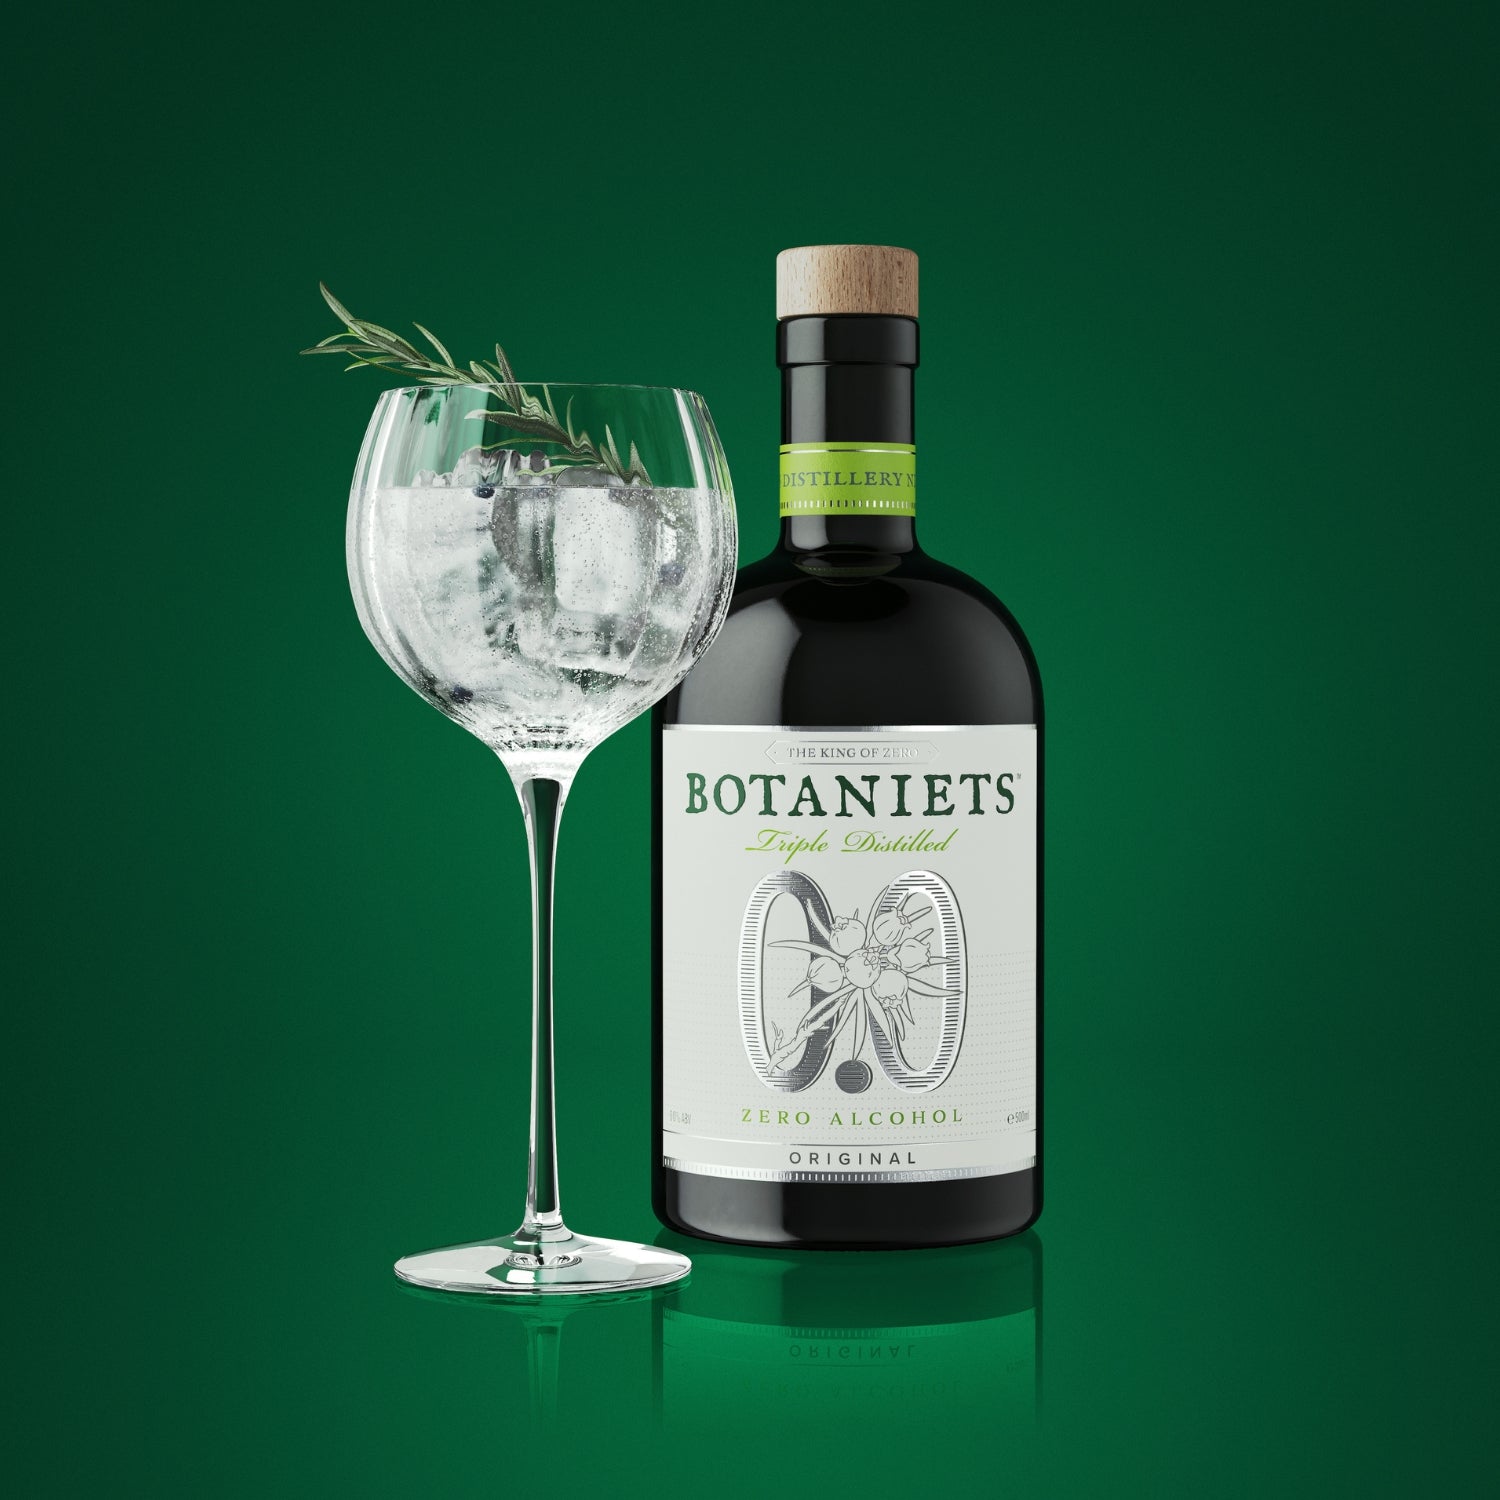 Botaniets Original, Distilled Spirit 0.0% 50cl